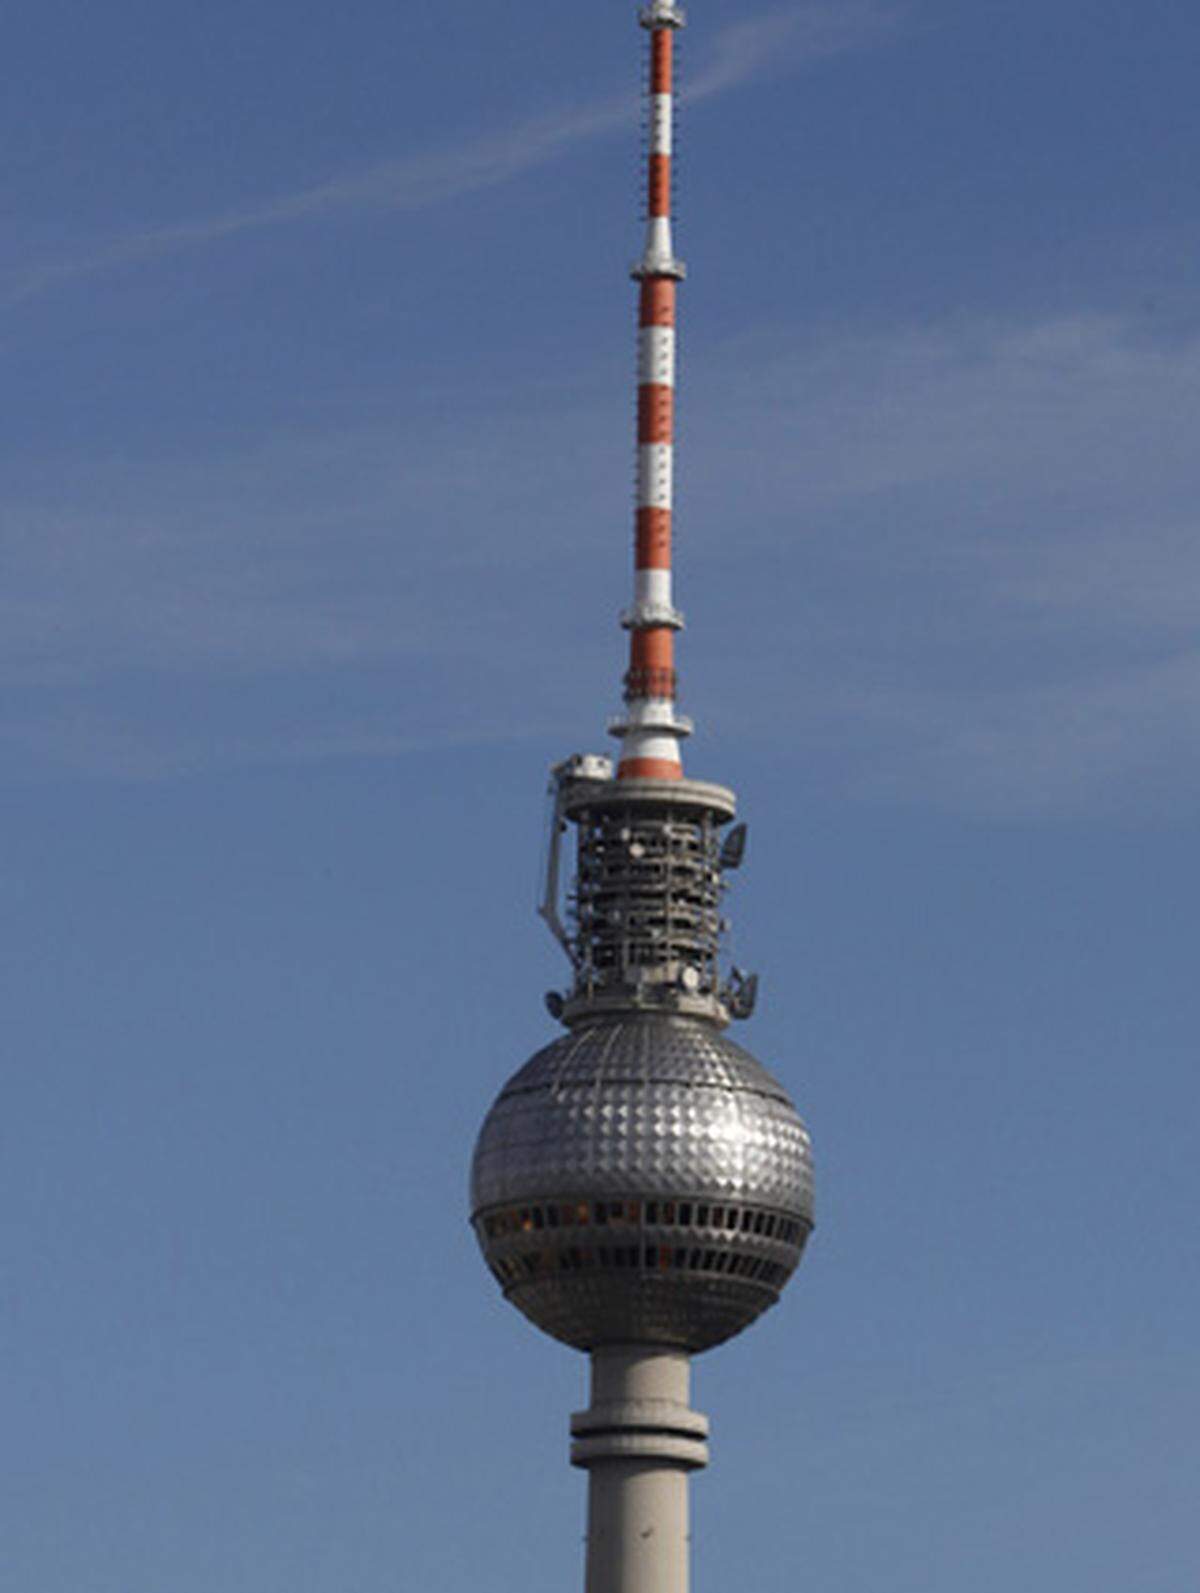 Der sozialitische Parteichef Walter Ulbricht traf am 22. September 1964 vor einem Modell der Stadt höchstpersönlich die Wahl des Standorts in seiner unnachahmlichen Weise mit den Worten: "Nu, Genossen, da sieht man's ganz genau: Da gehört er hin." Heute ist der Berliner Fernsehturm Symbol für die ganze Stadt.